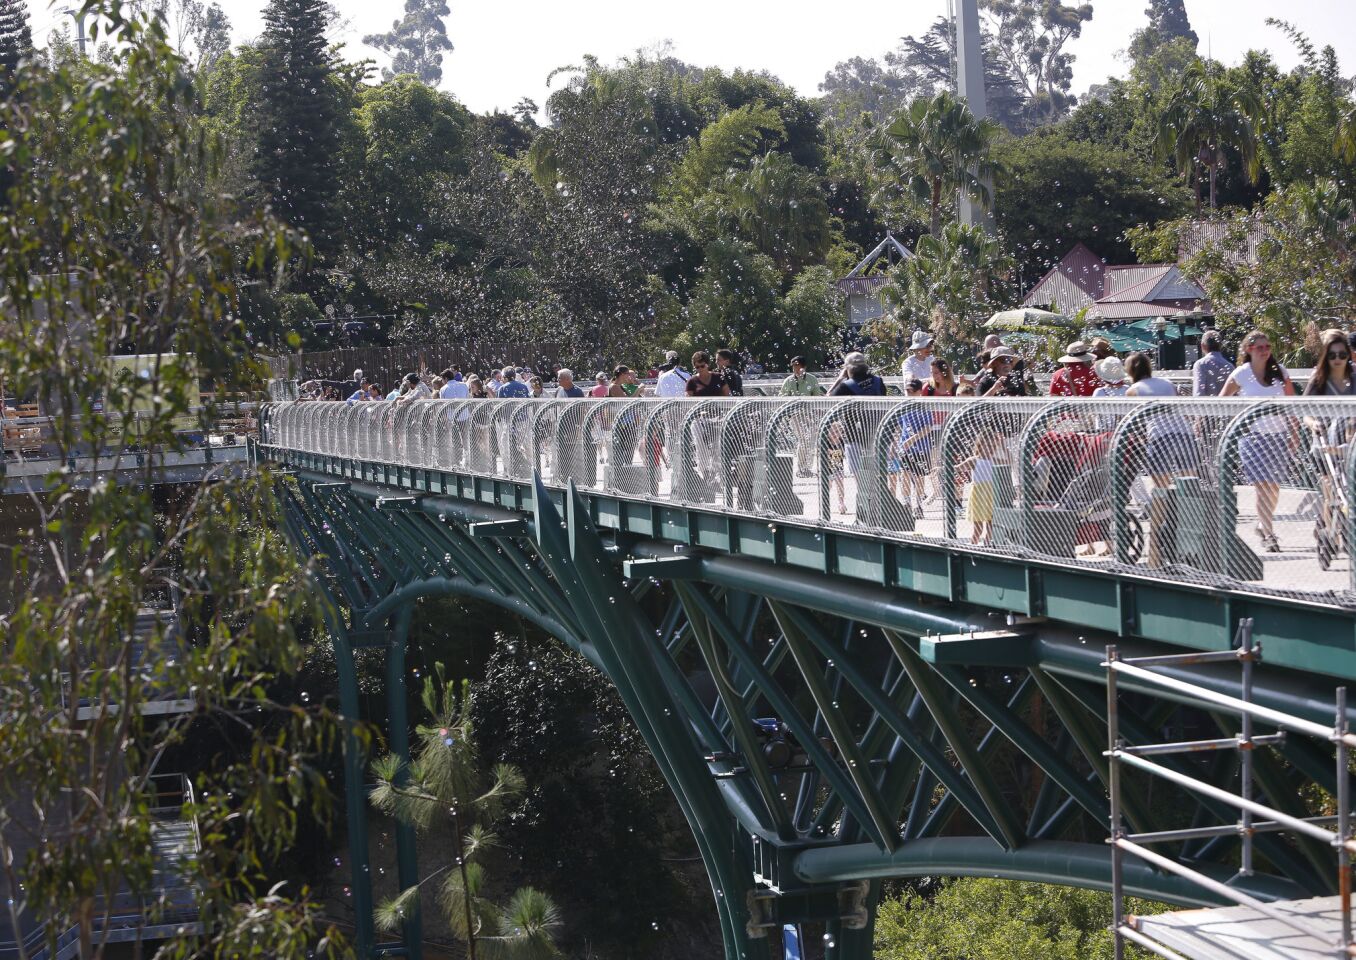 The Zoo's new Canopy Bridge